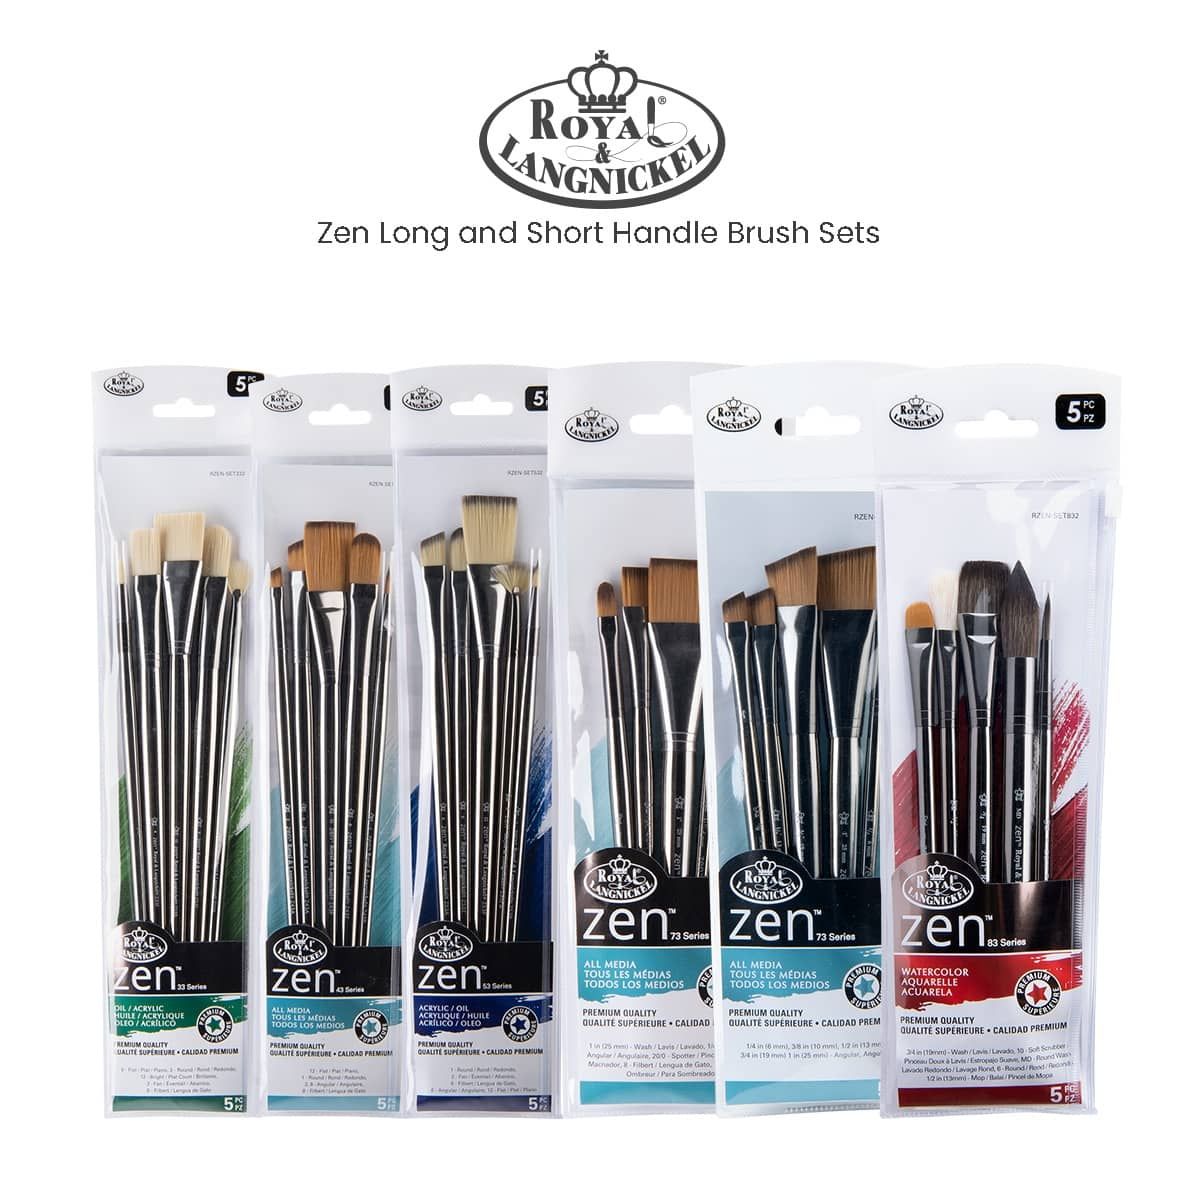 Zem Brush Student Golden Synthetic Rounds Brushes Set Sizes 2,4,6,8,10